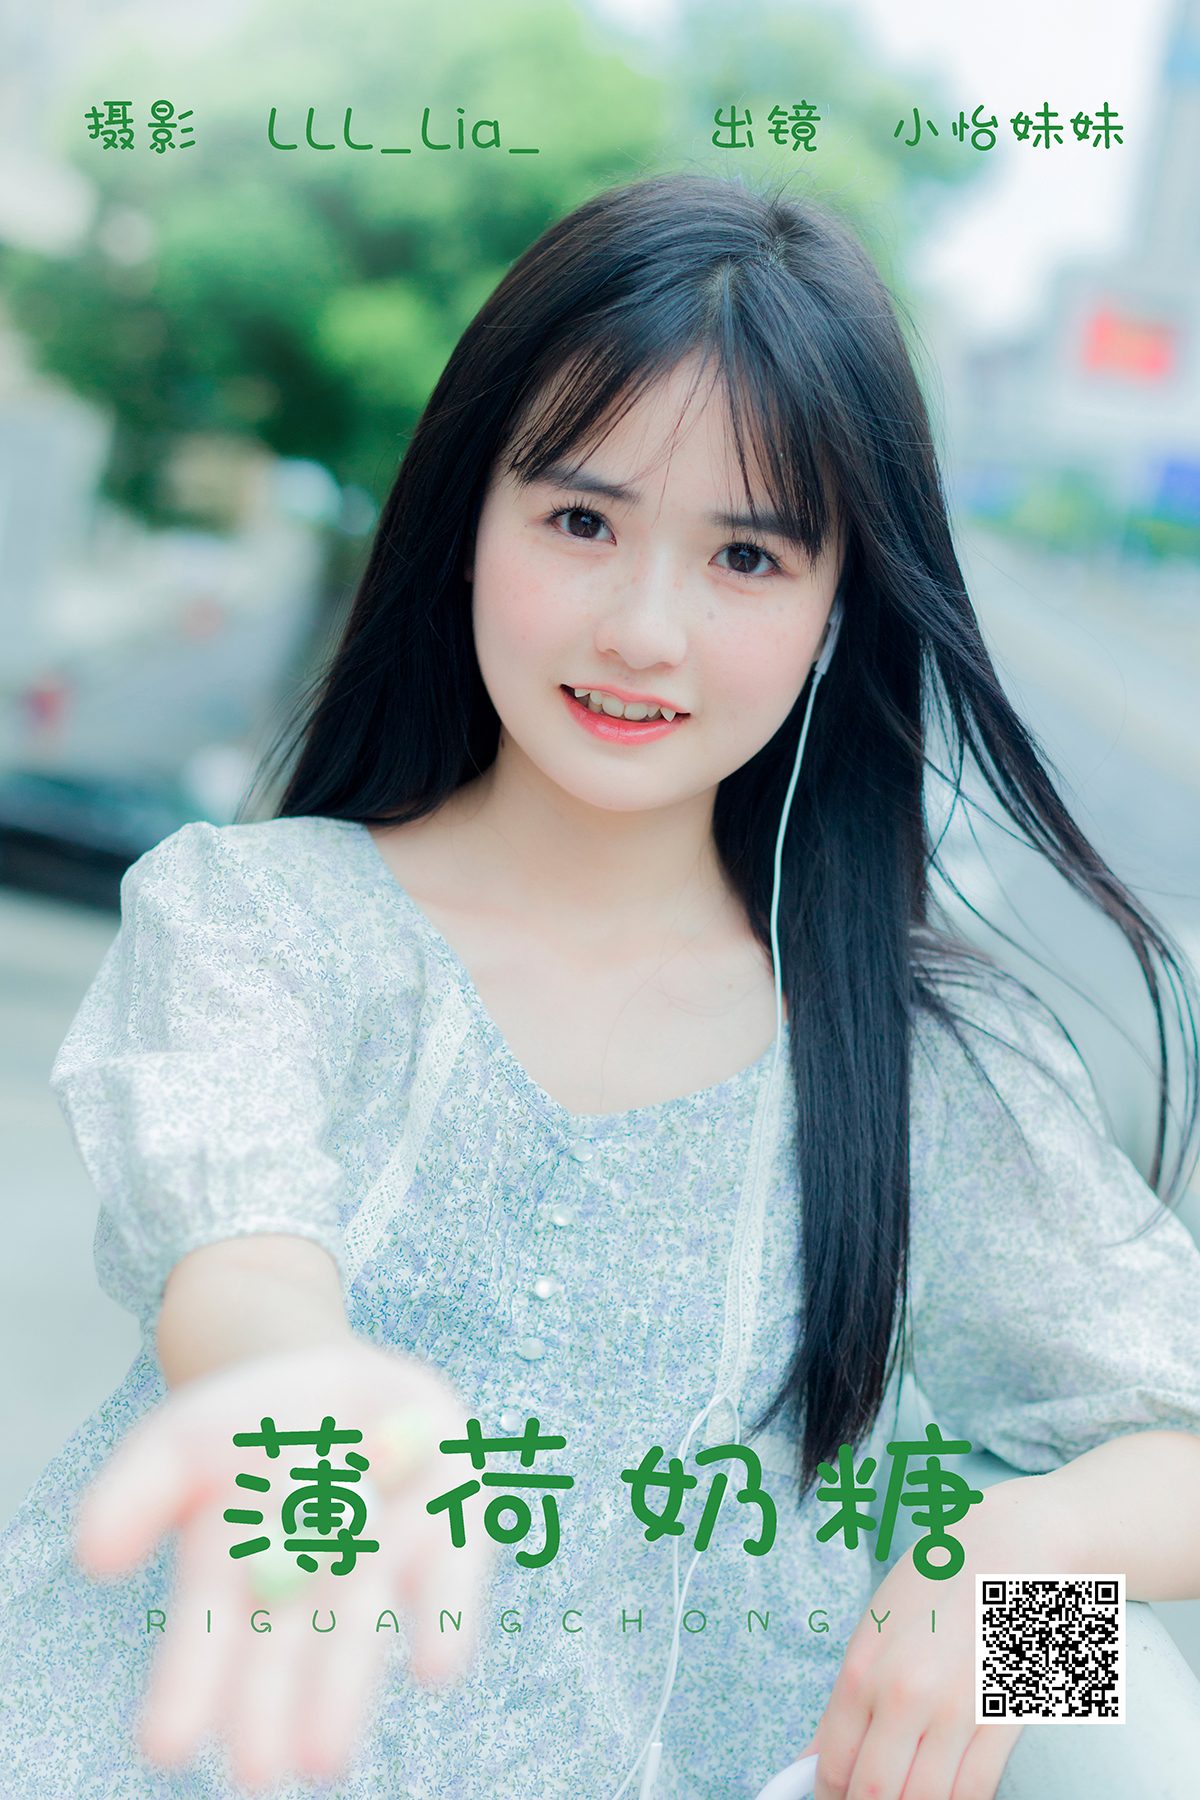 YiTuYu艺图语 Vol 5126 Xiao Yi Mei Mei Cute 0012 4238848744.jpg